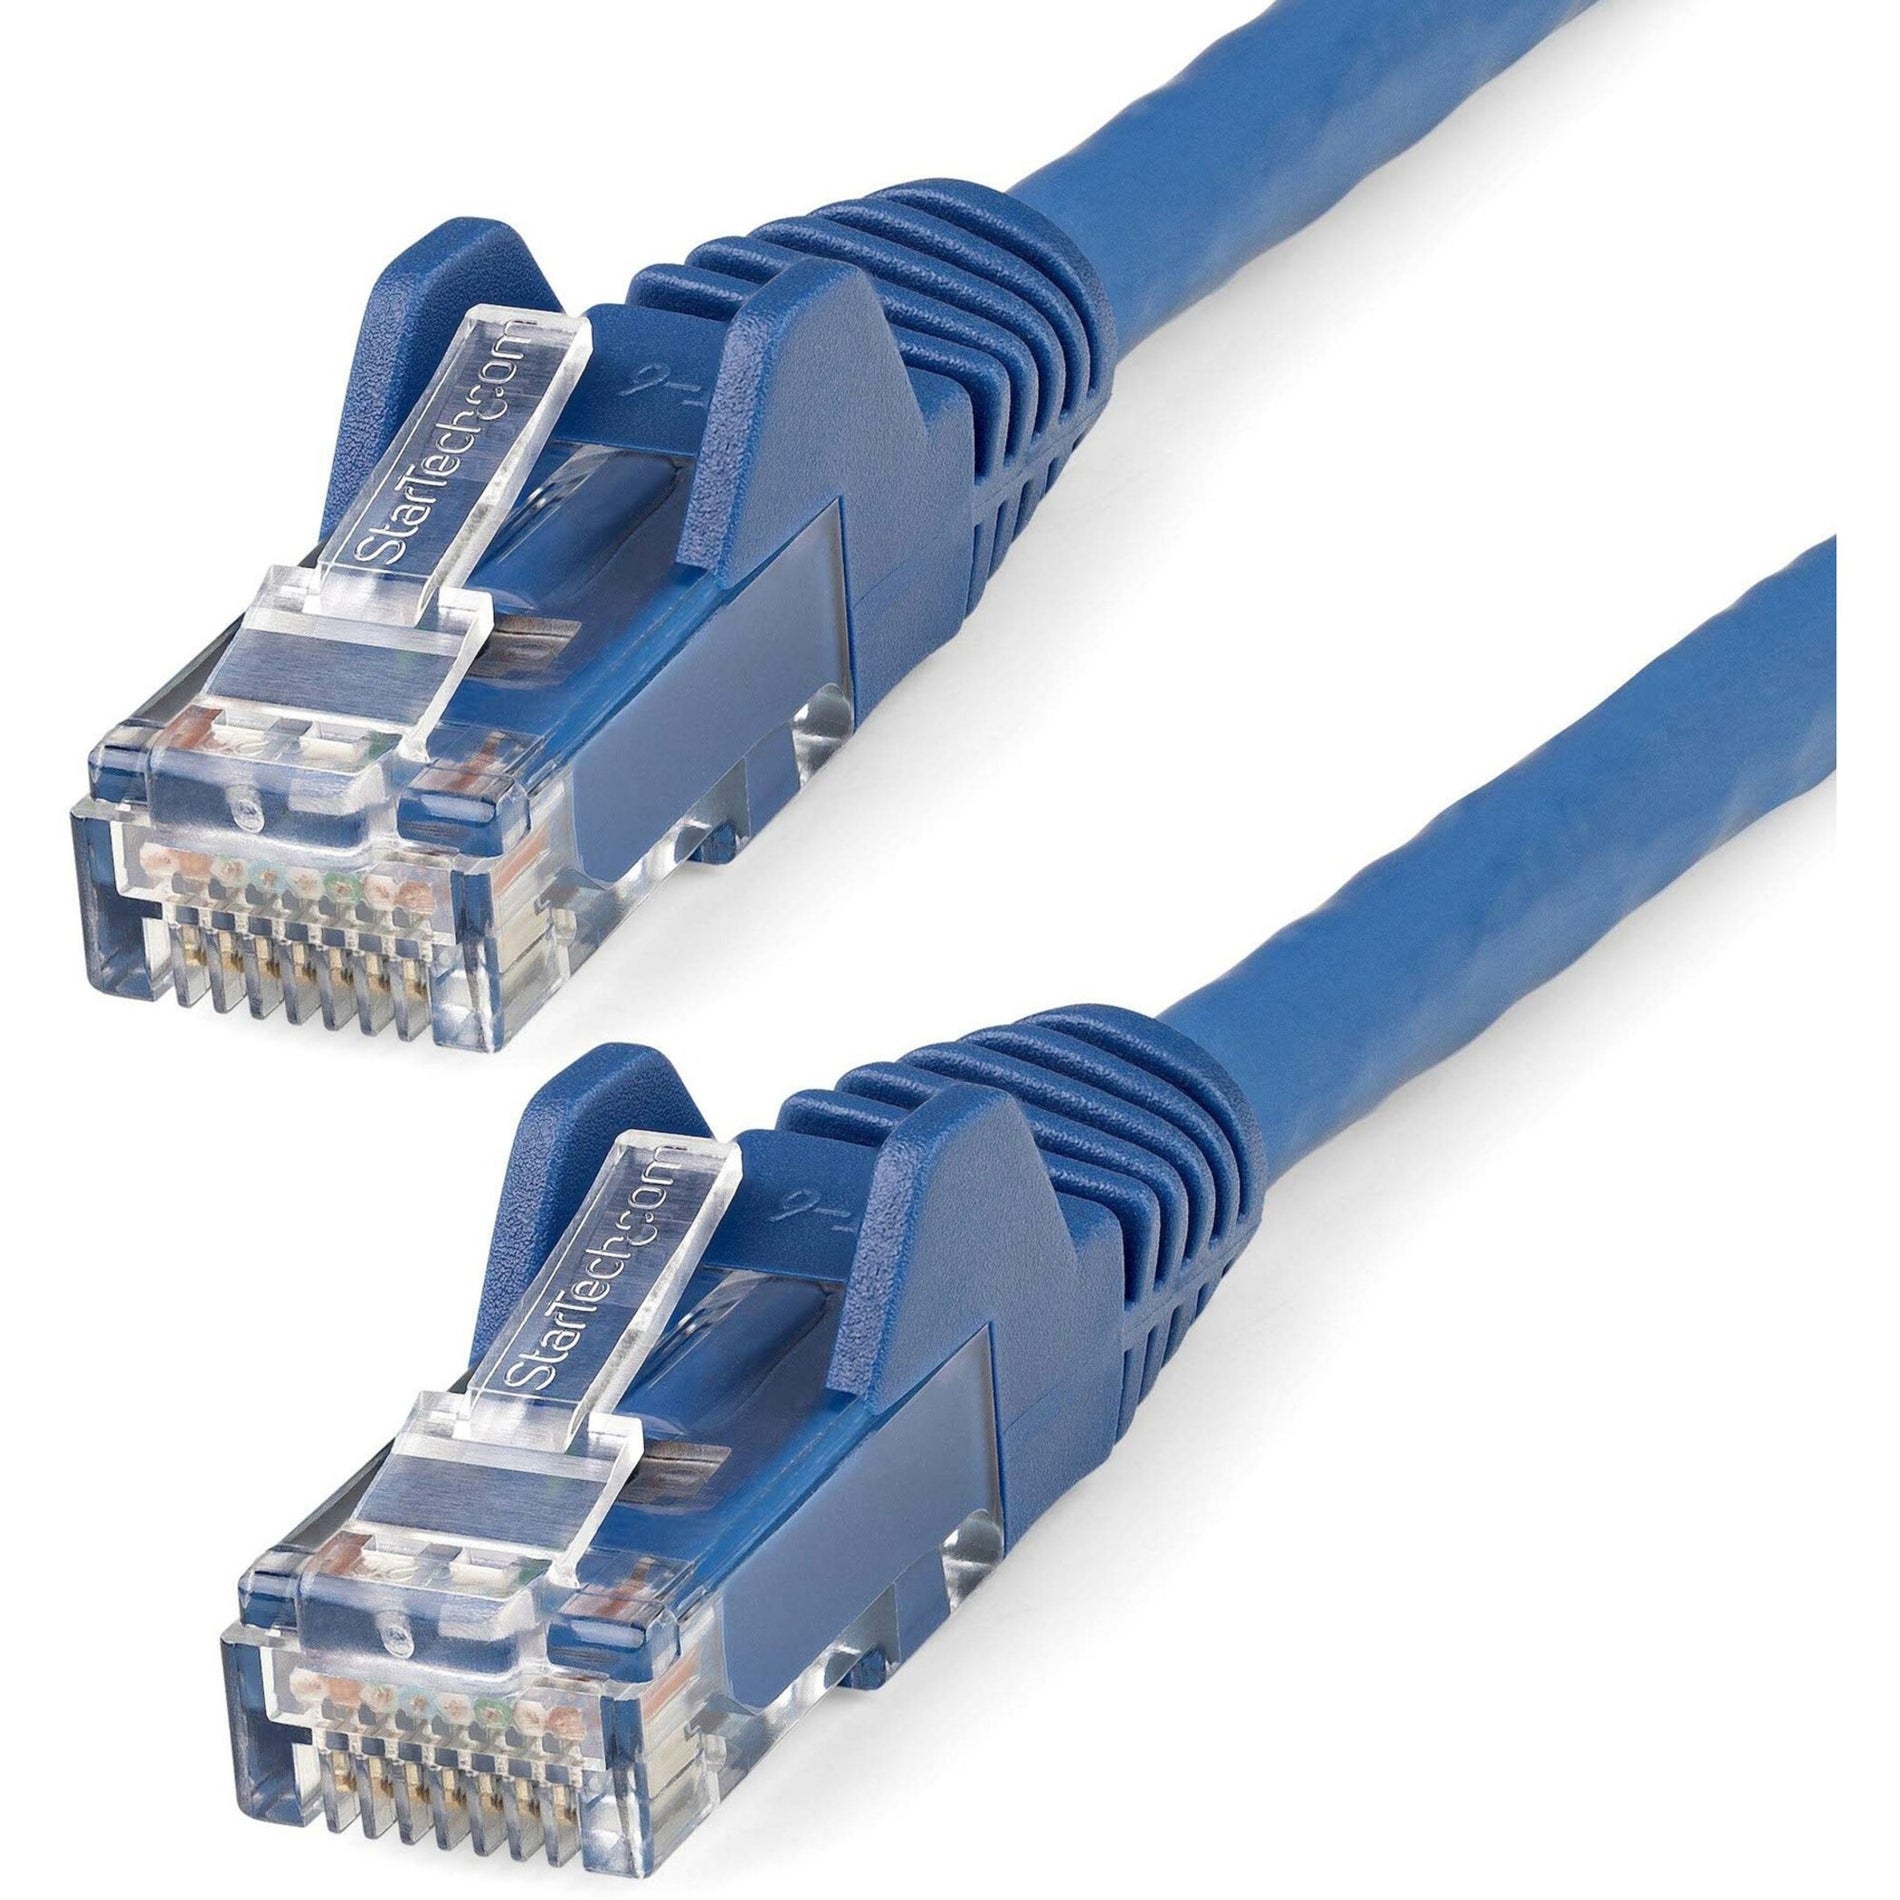 StarTech.com N6LPATCH10BL 10ft LSZH CAT6 Ethernet Cable - Blue, Flexible, PoE, Stranded, 10 Gbit/s